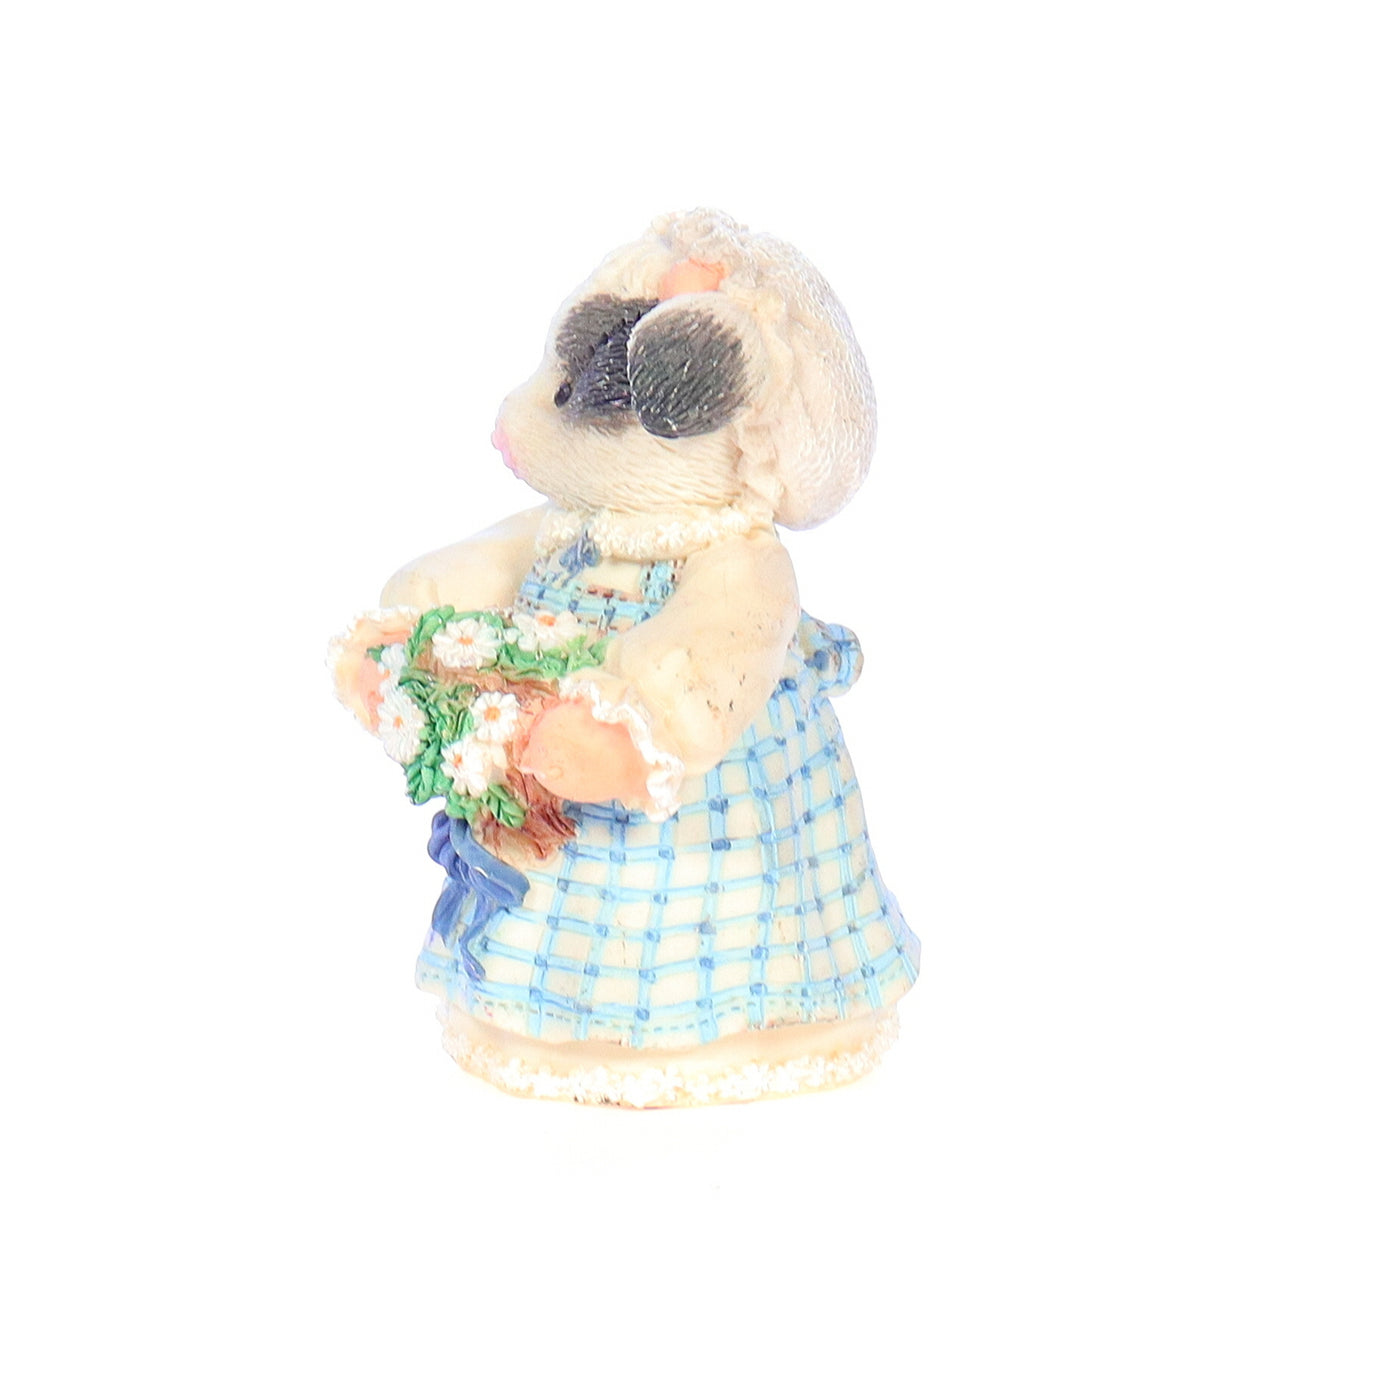 marys moo moos 167517 milk maid wedding figurine 1995